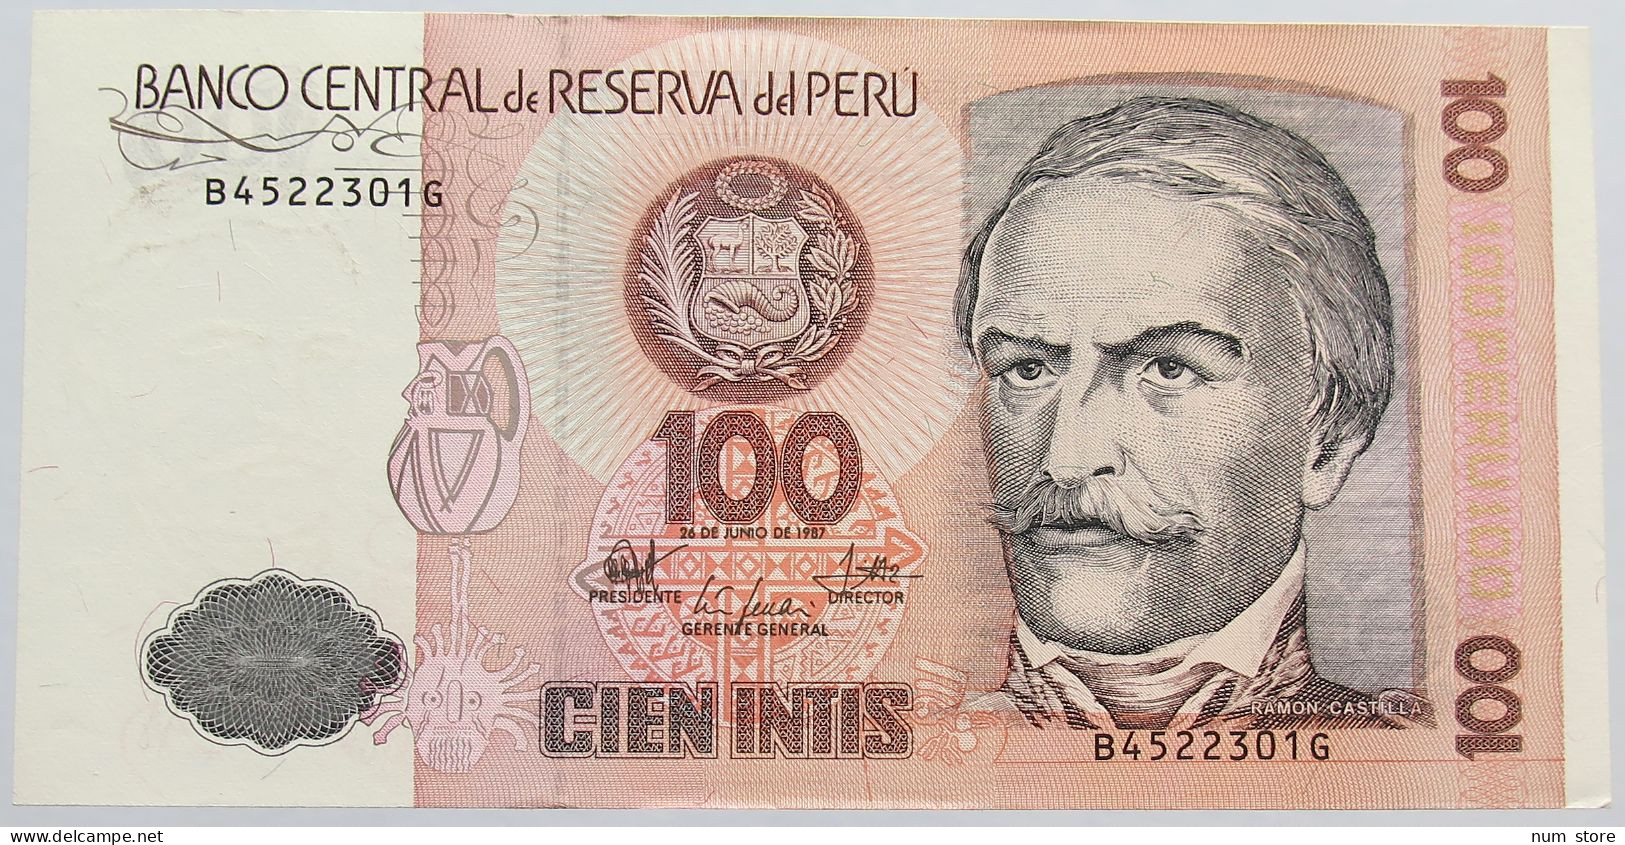 PERU 100 INTIS 1987 #alb014 0131 - Peru